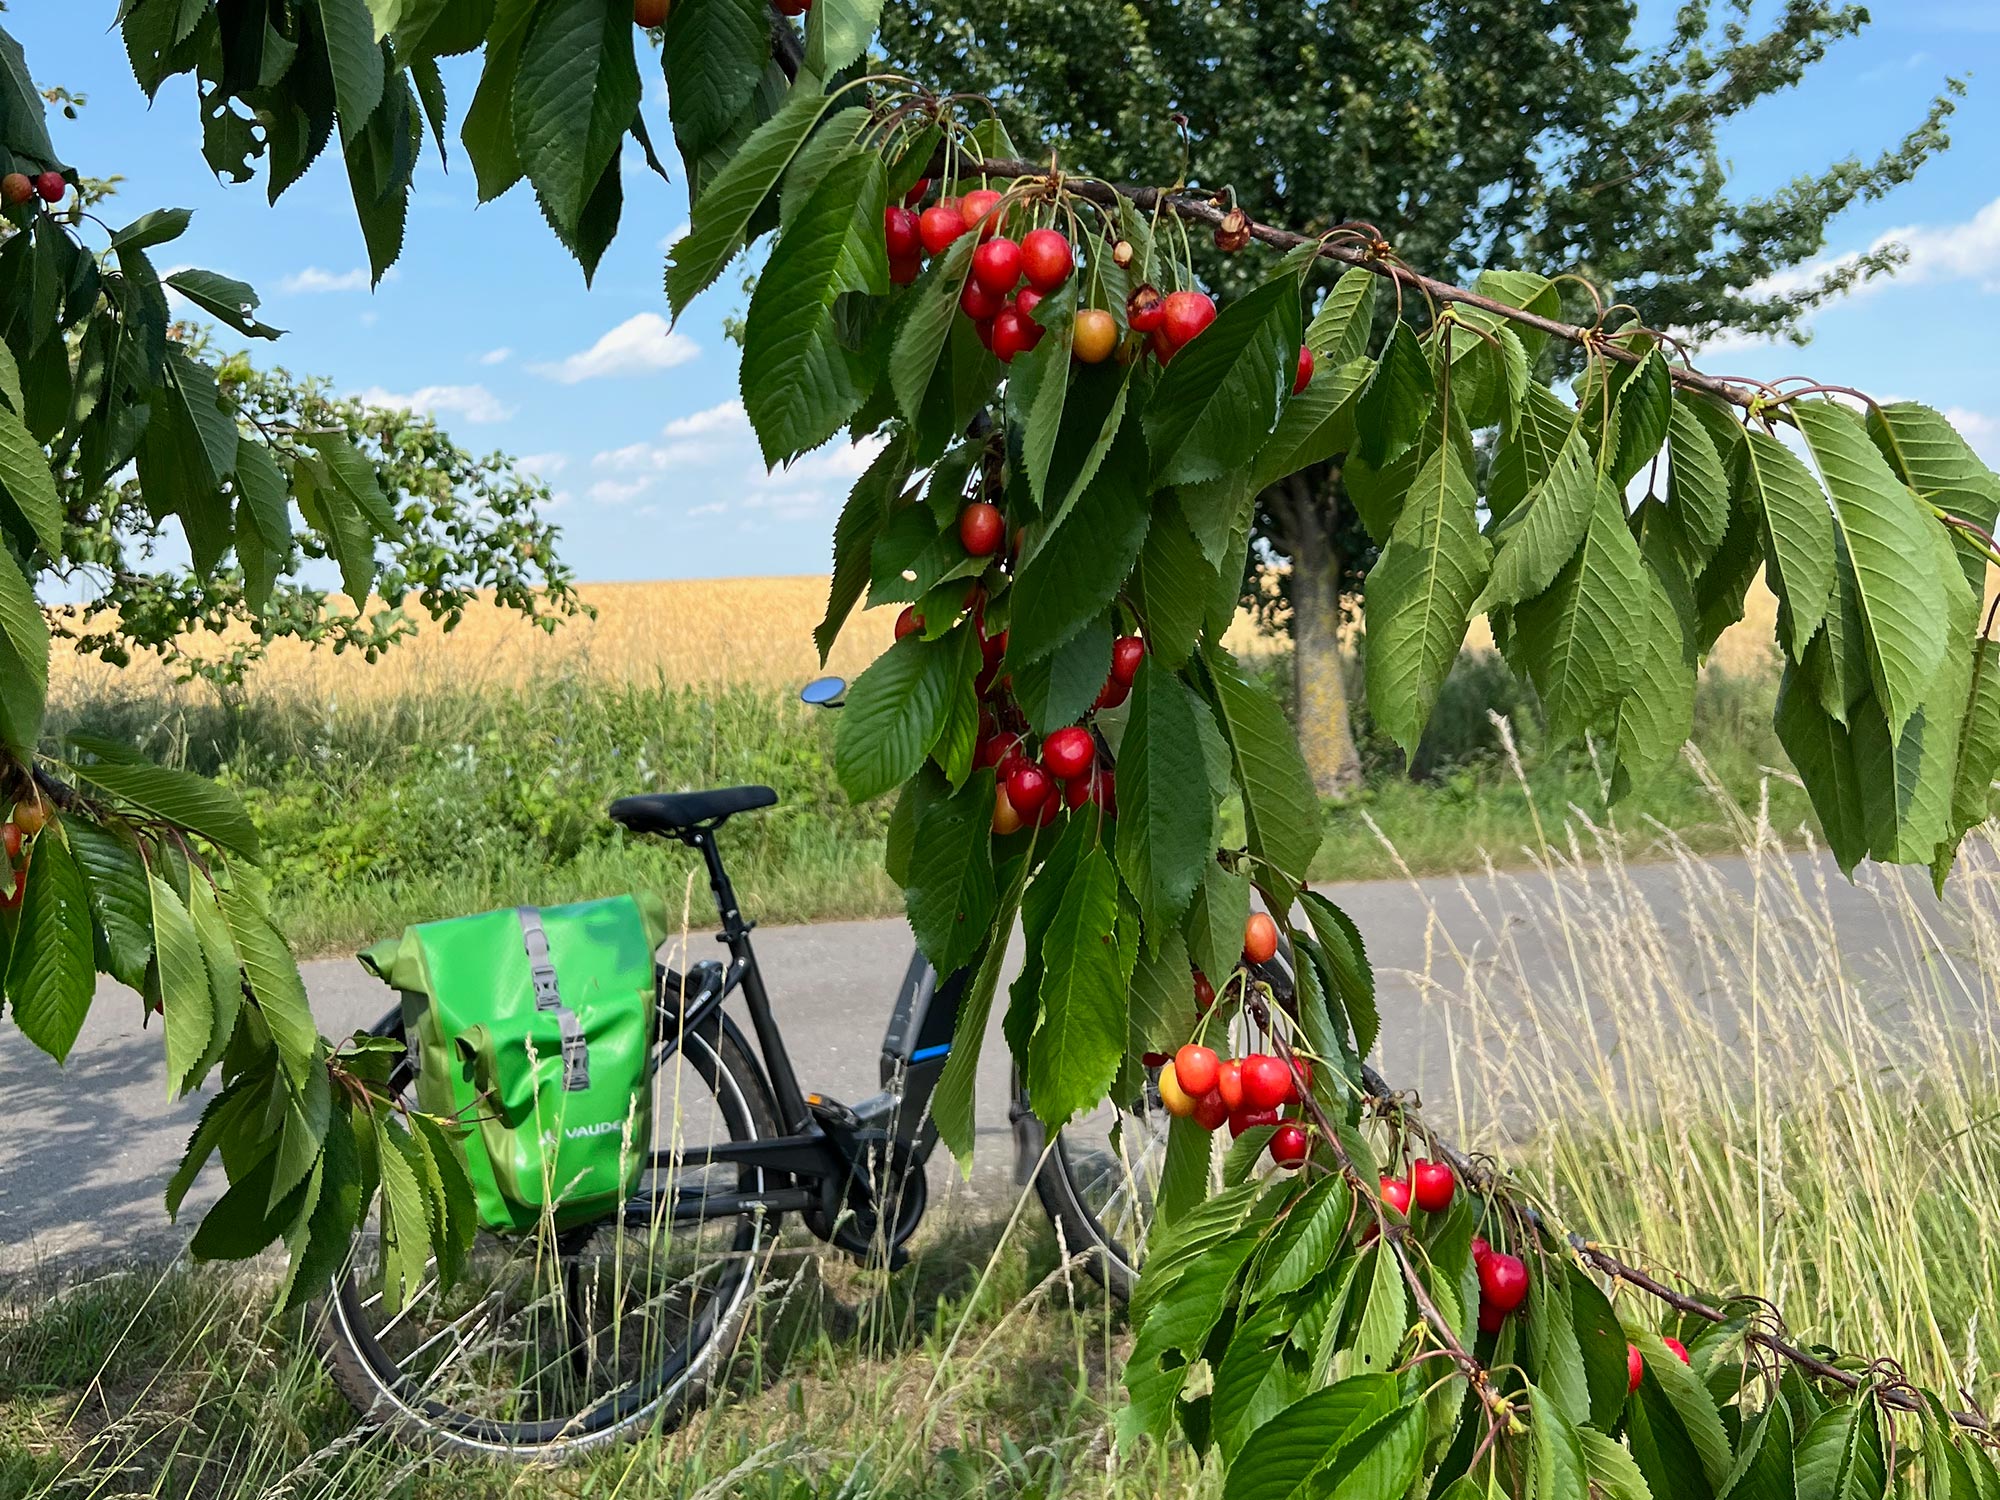 Kirschen und Fahrrad mit grüner Tasche im Sommer